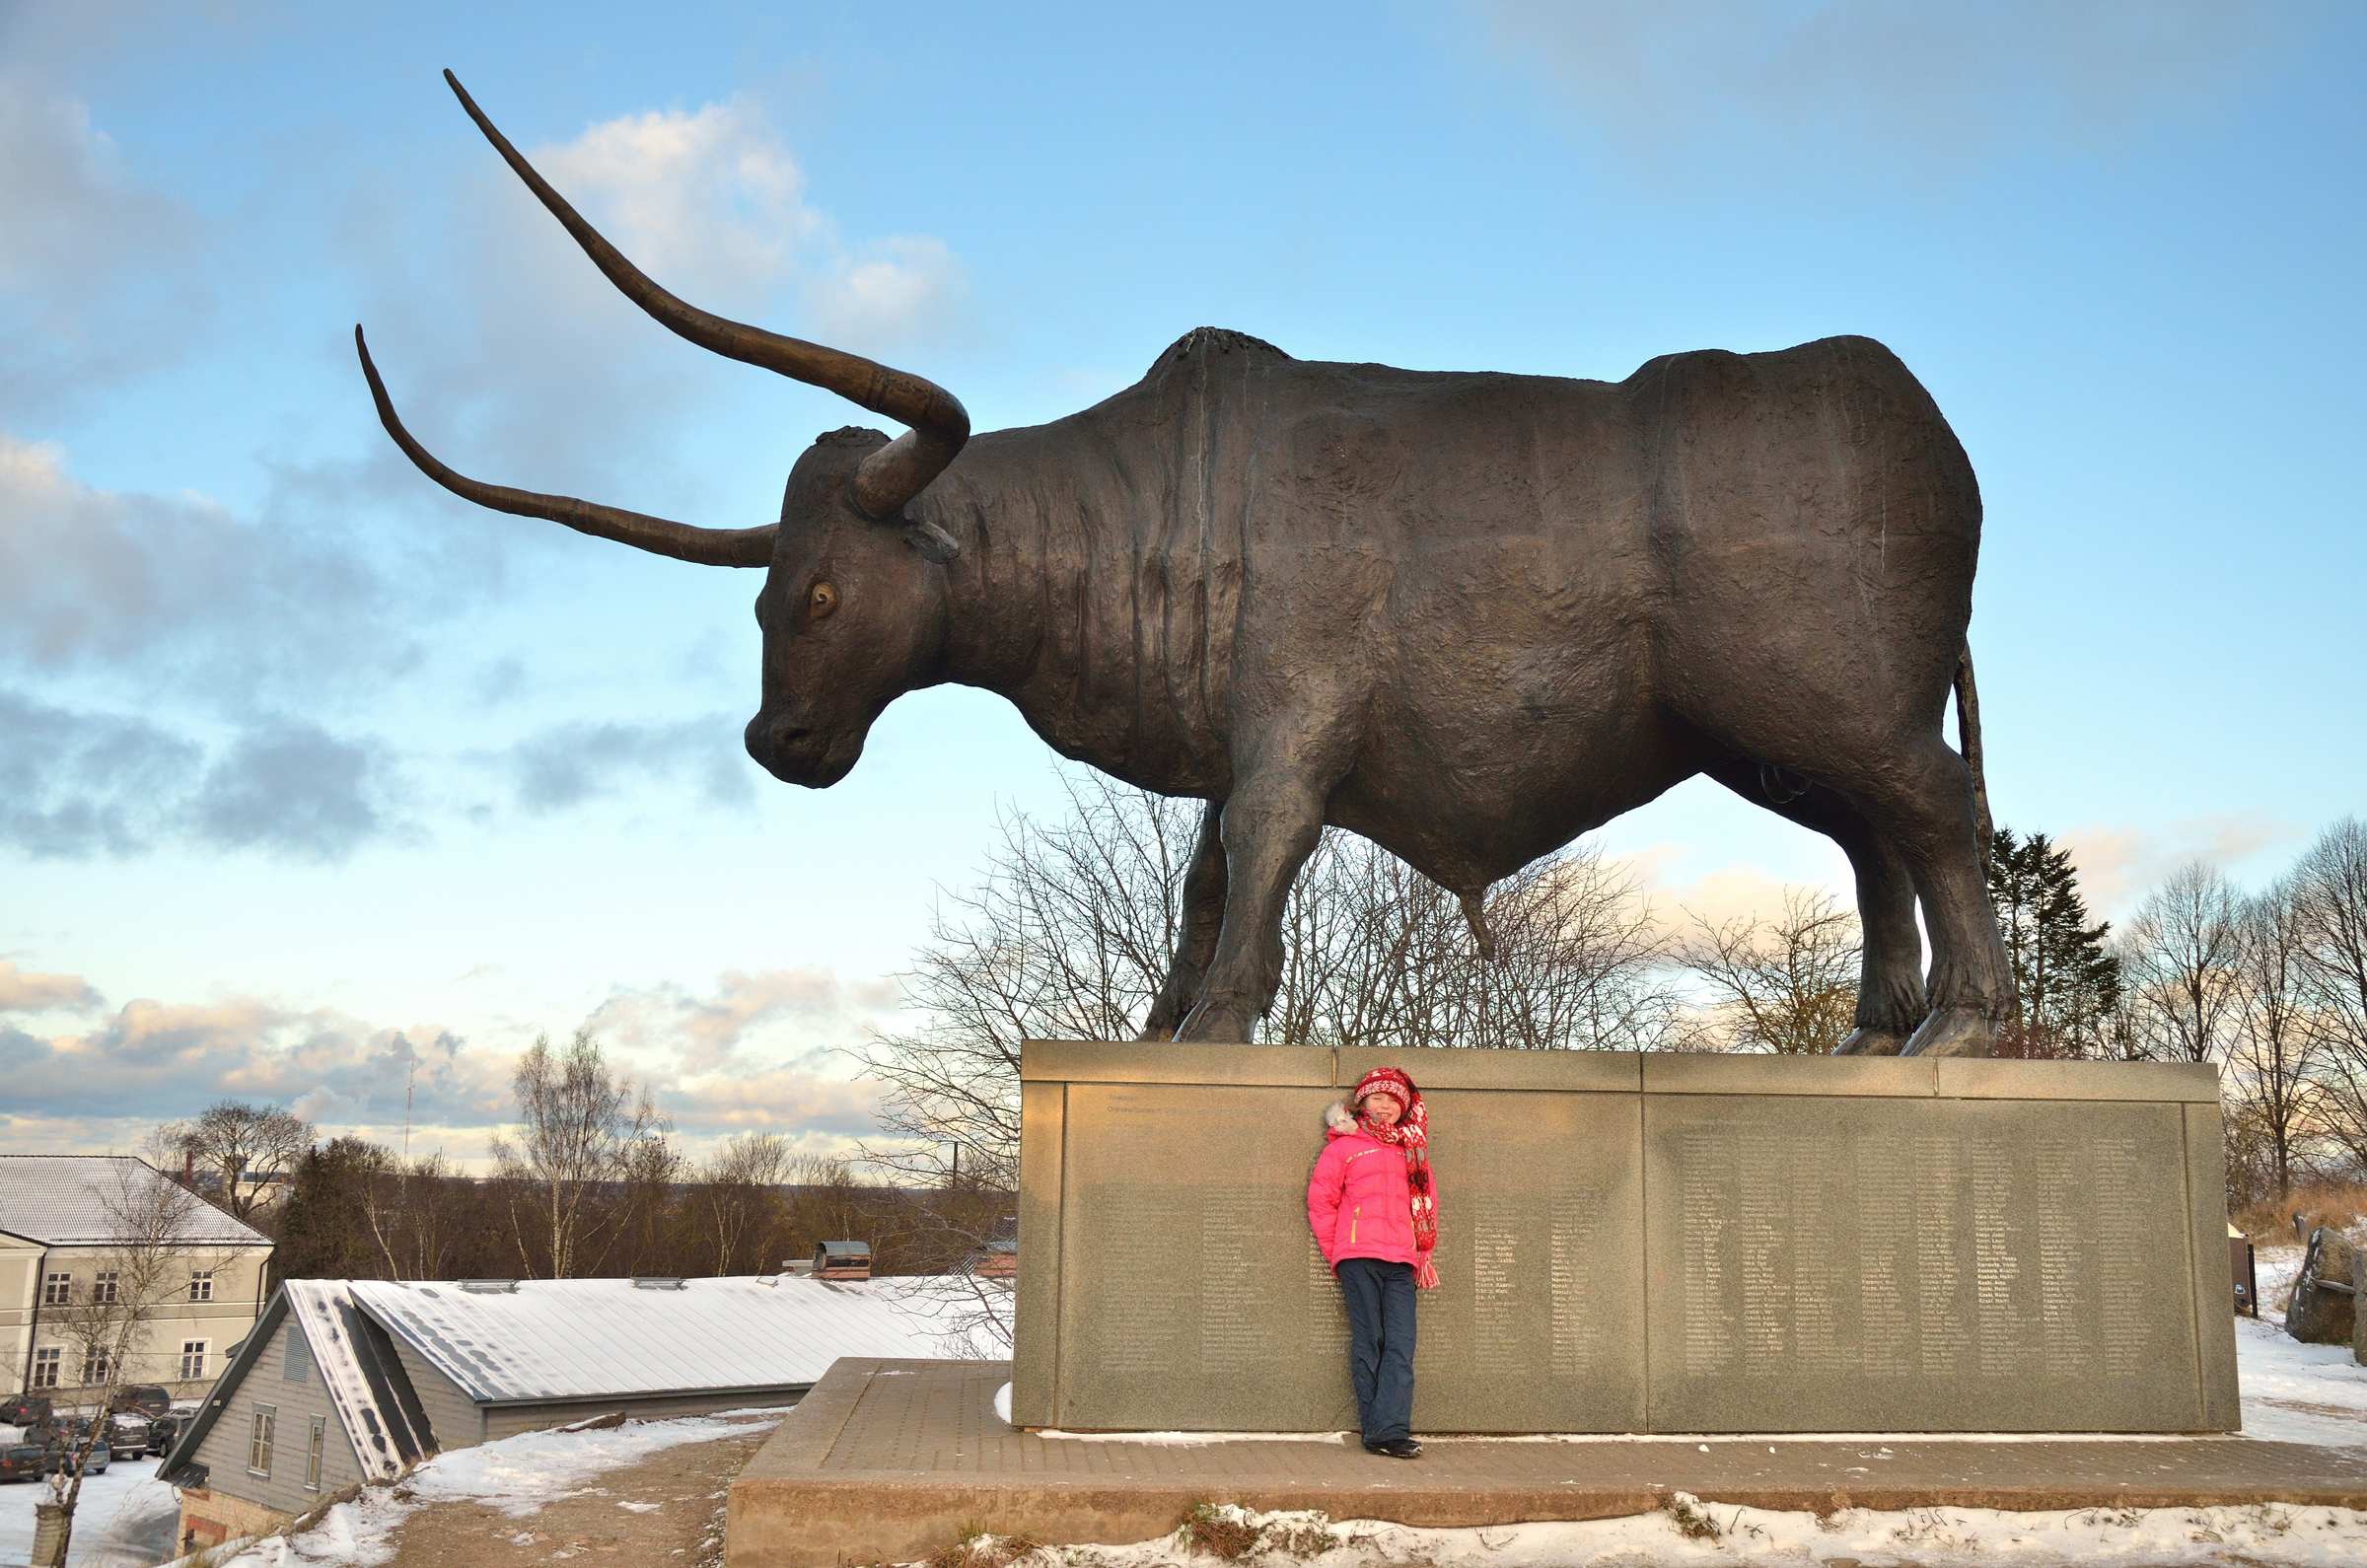 Символ города Раквере - гигантский бронзовый бык